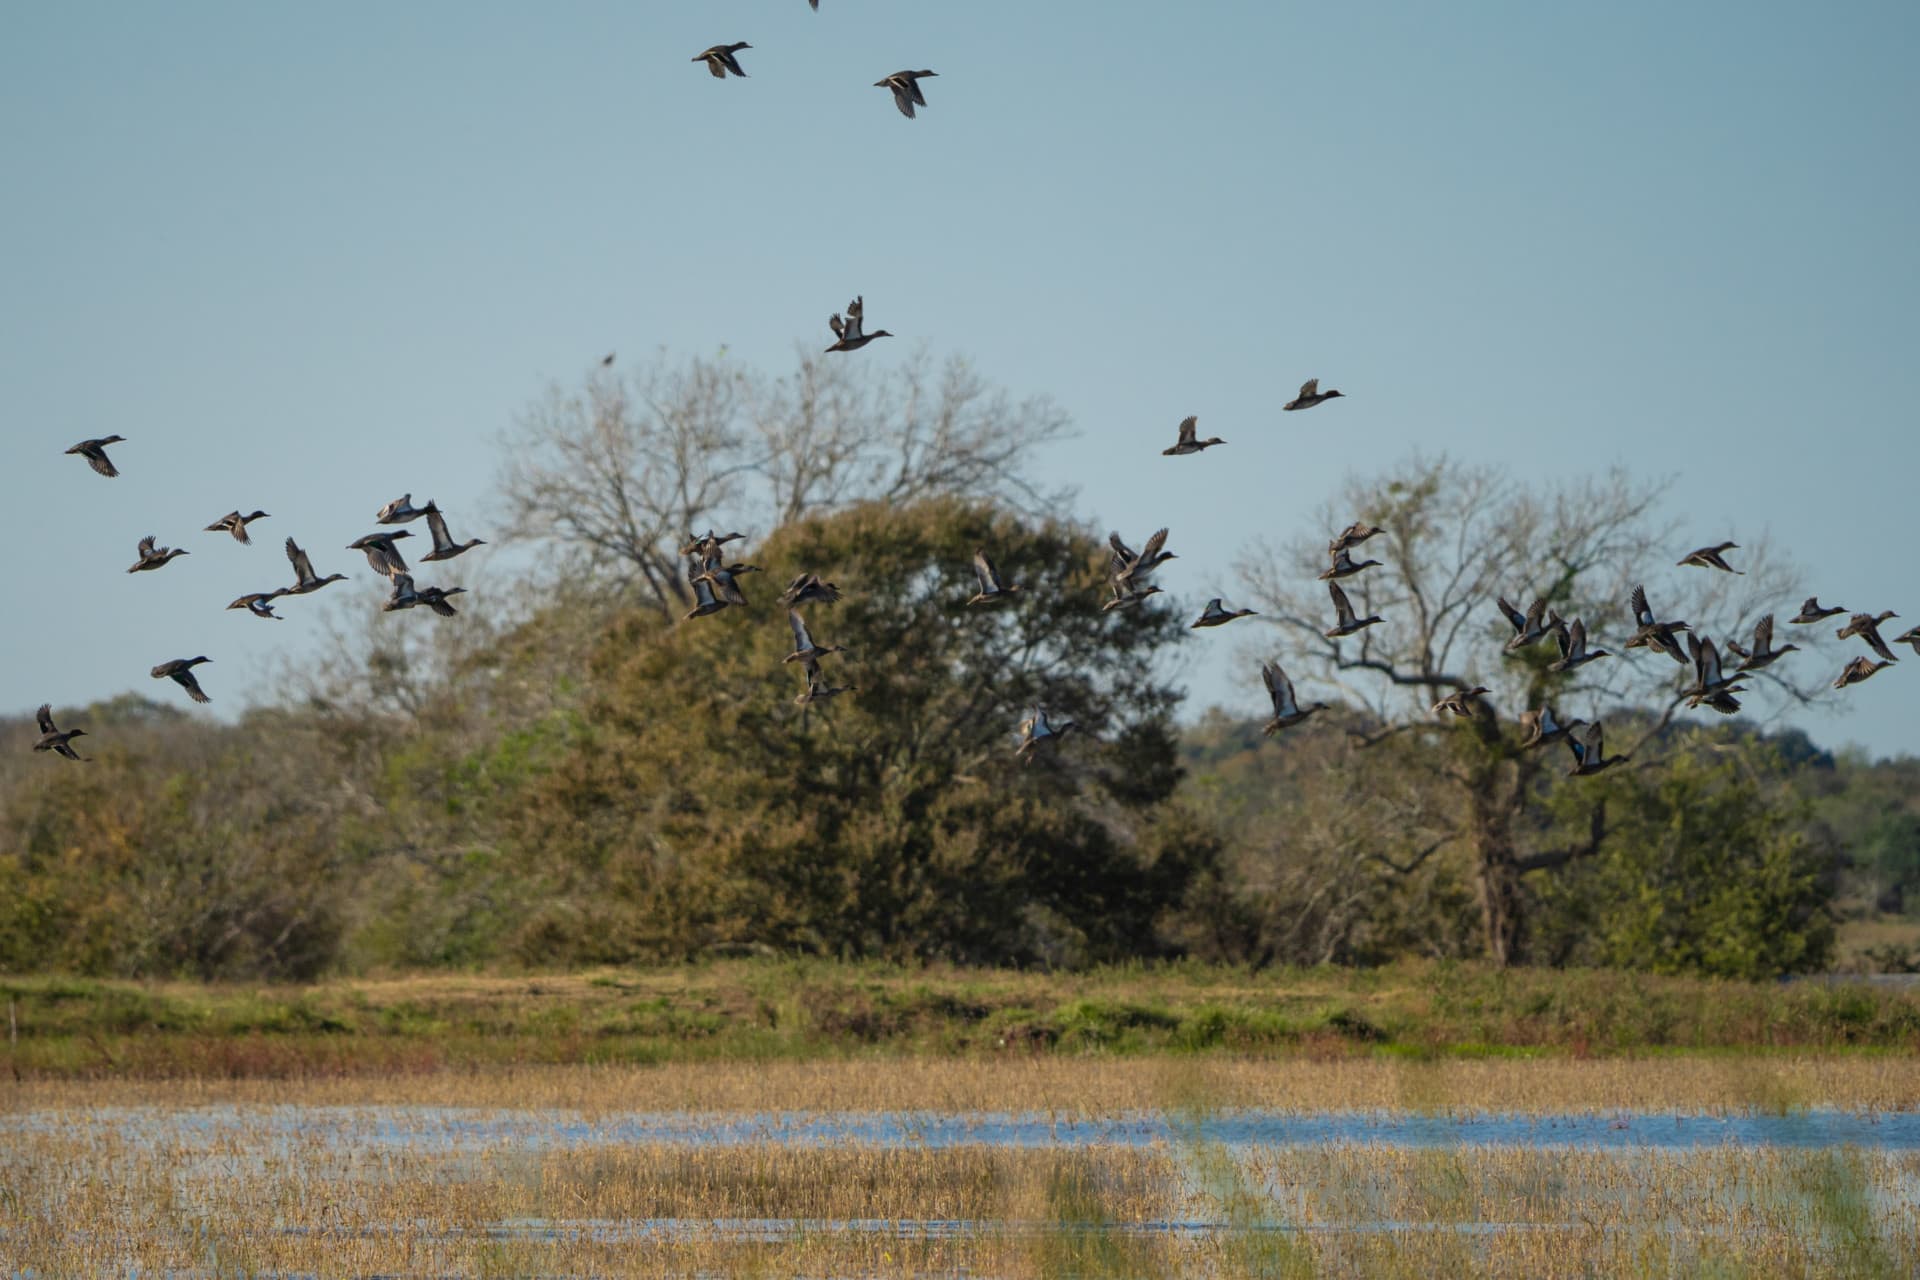 ducks in flight texas 4lj3 ranch